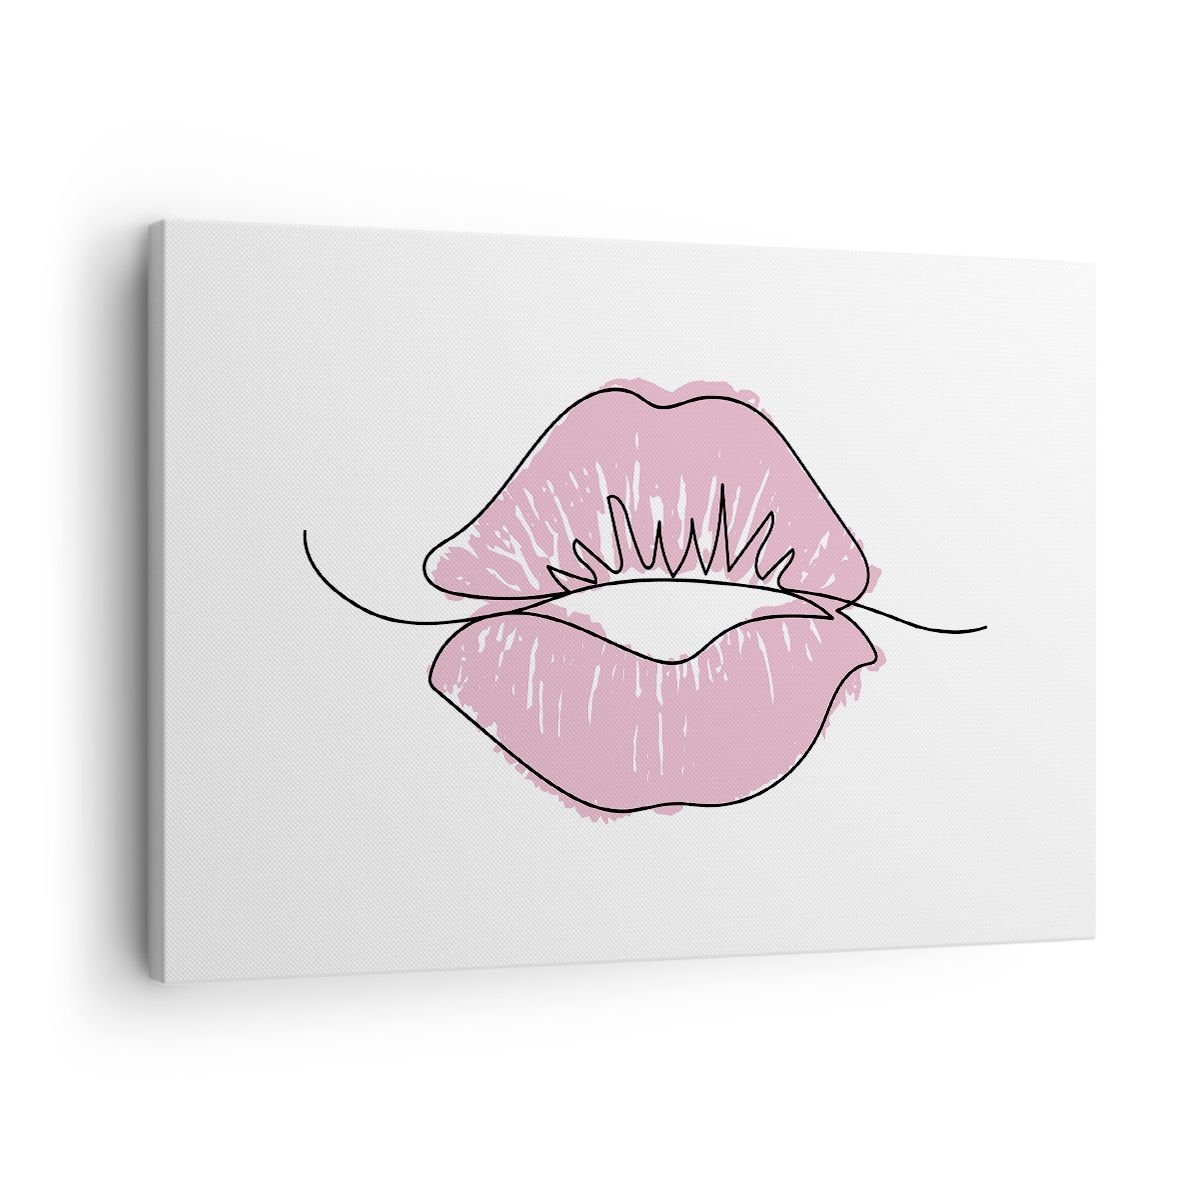 Obraz Na Płótnie Gotowy Do Pocałunku 70x50cm Grafika Różowe Usta Sztuka Nowoczesny 8434